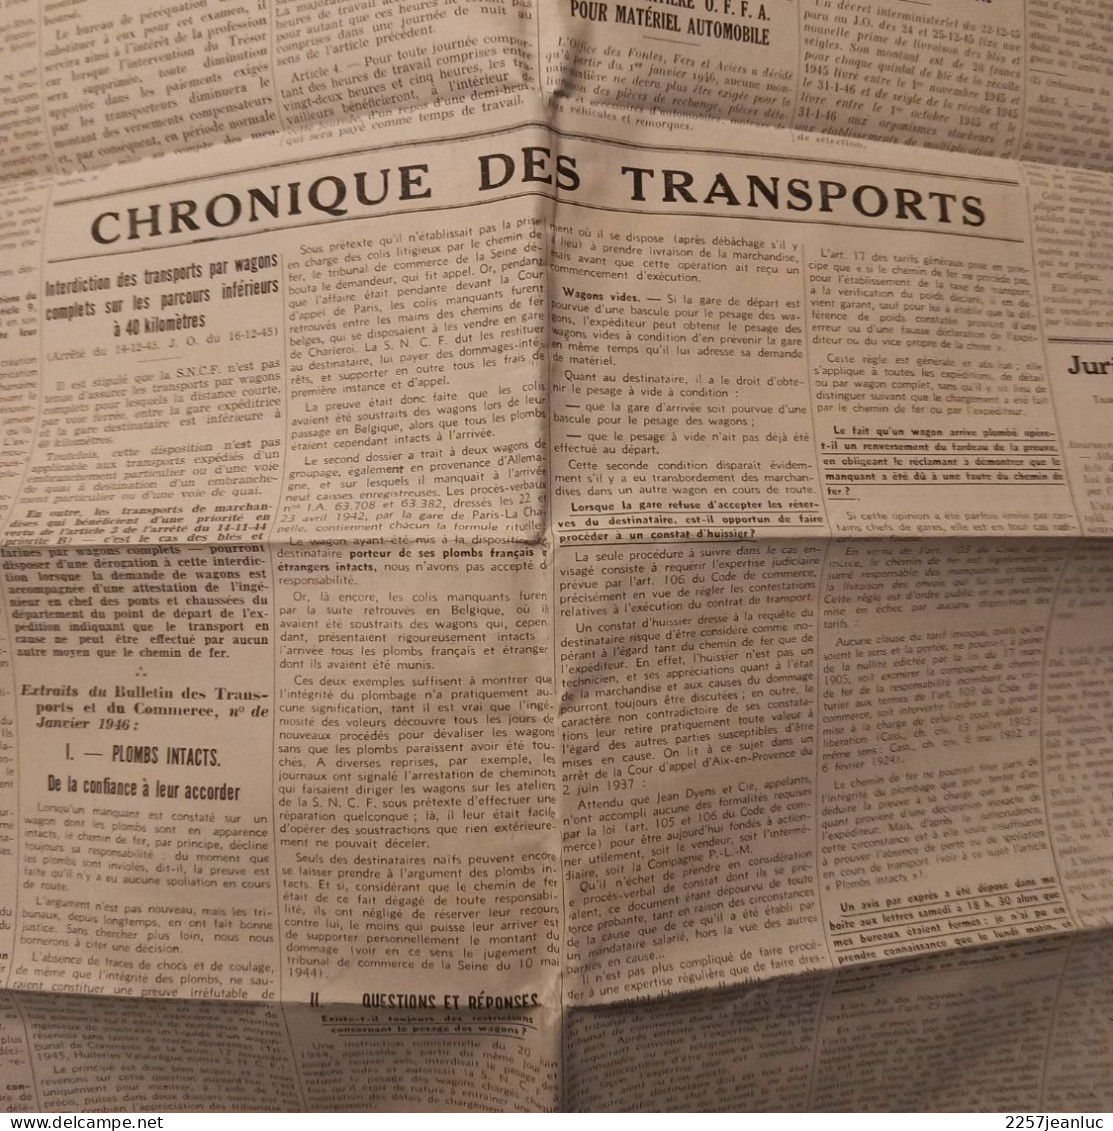 Rare  Documentation Construction et plan à 5 ans des Camions Français sur bulletin des Meuniers  n: 41 de Janvier 1946